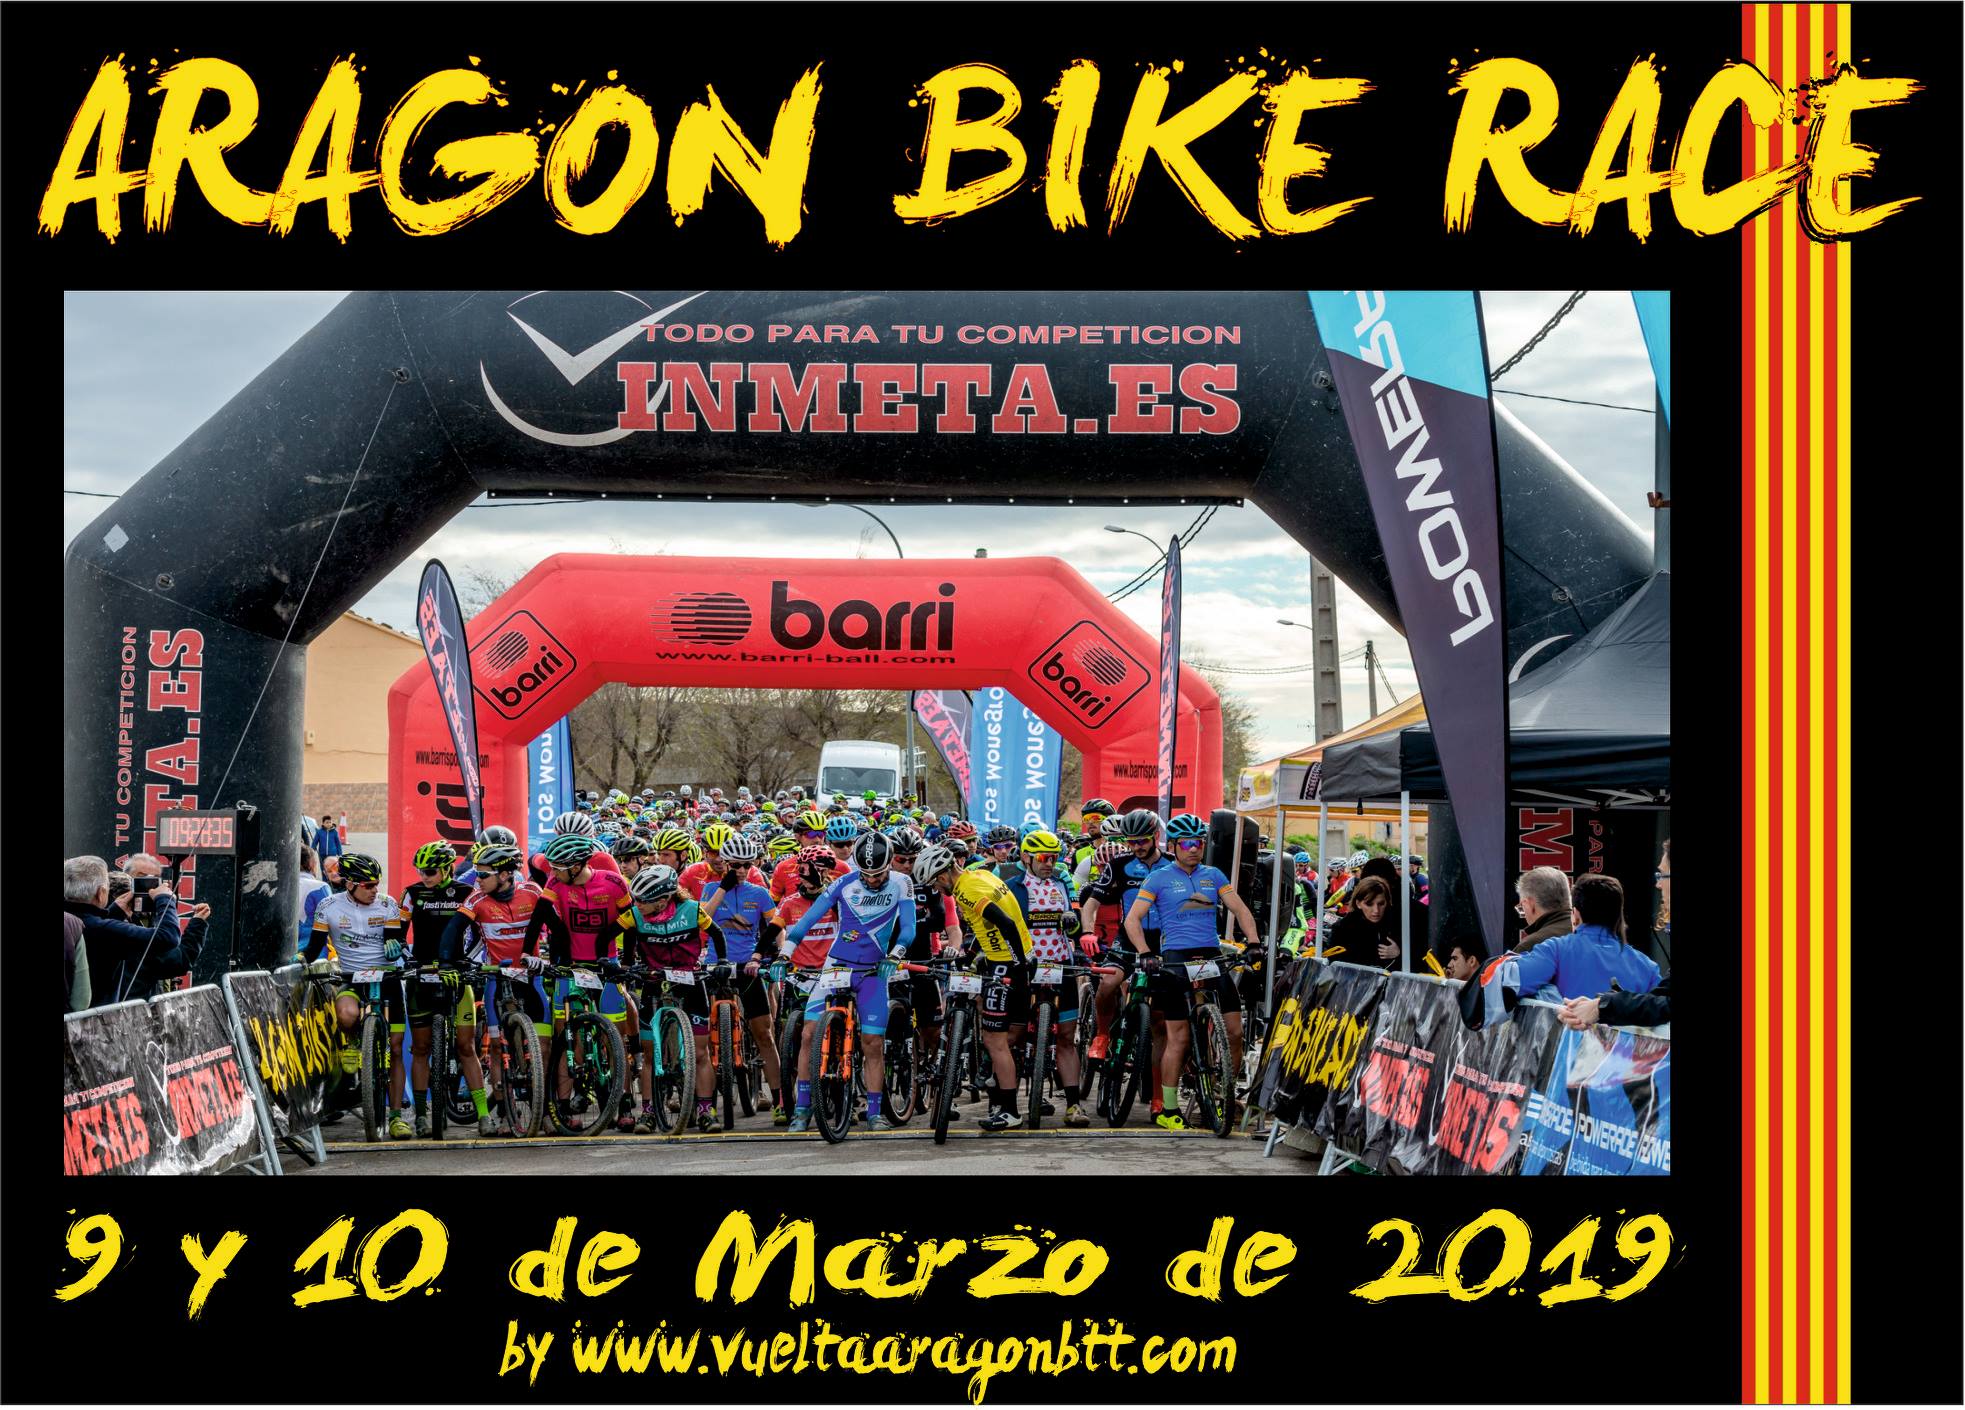 ARAGÓN BIKE RACE 2019